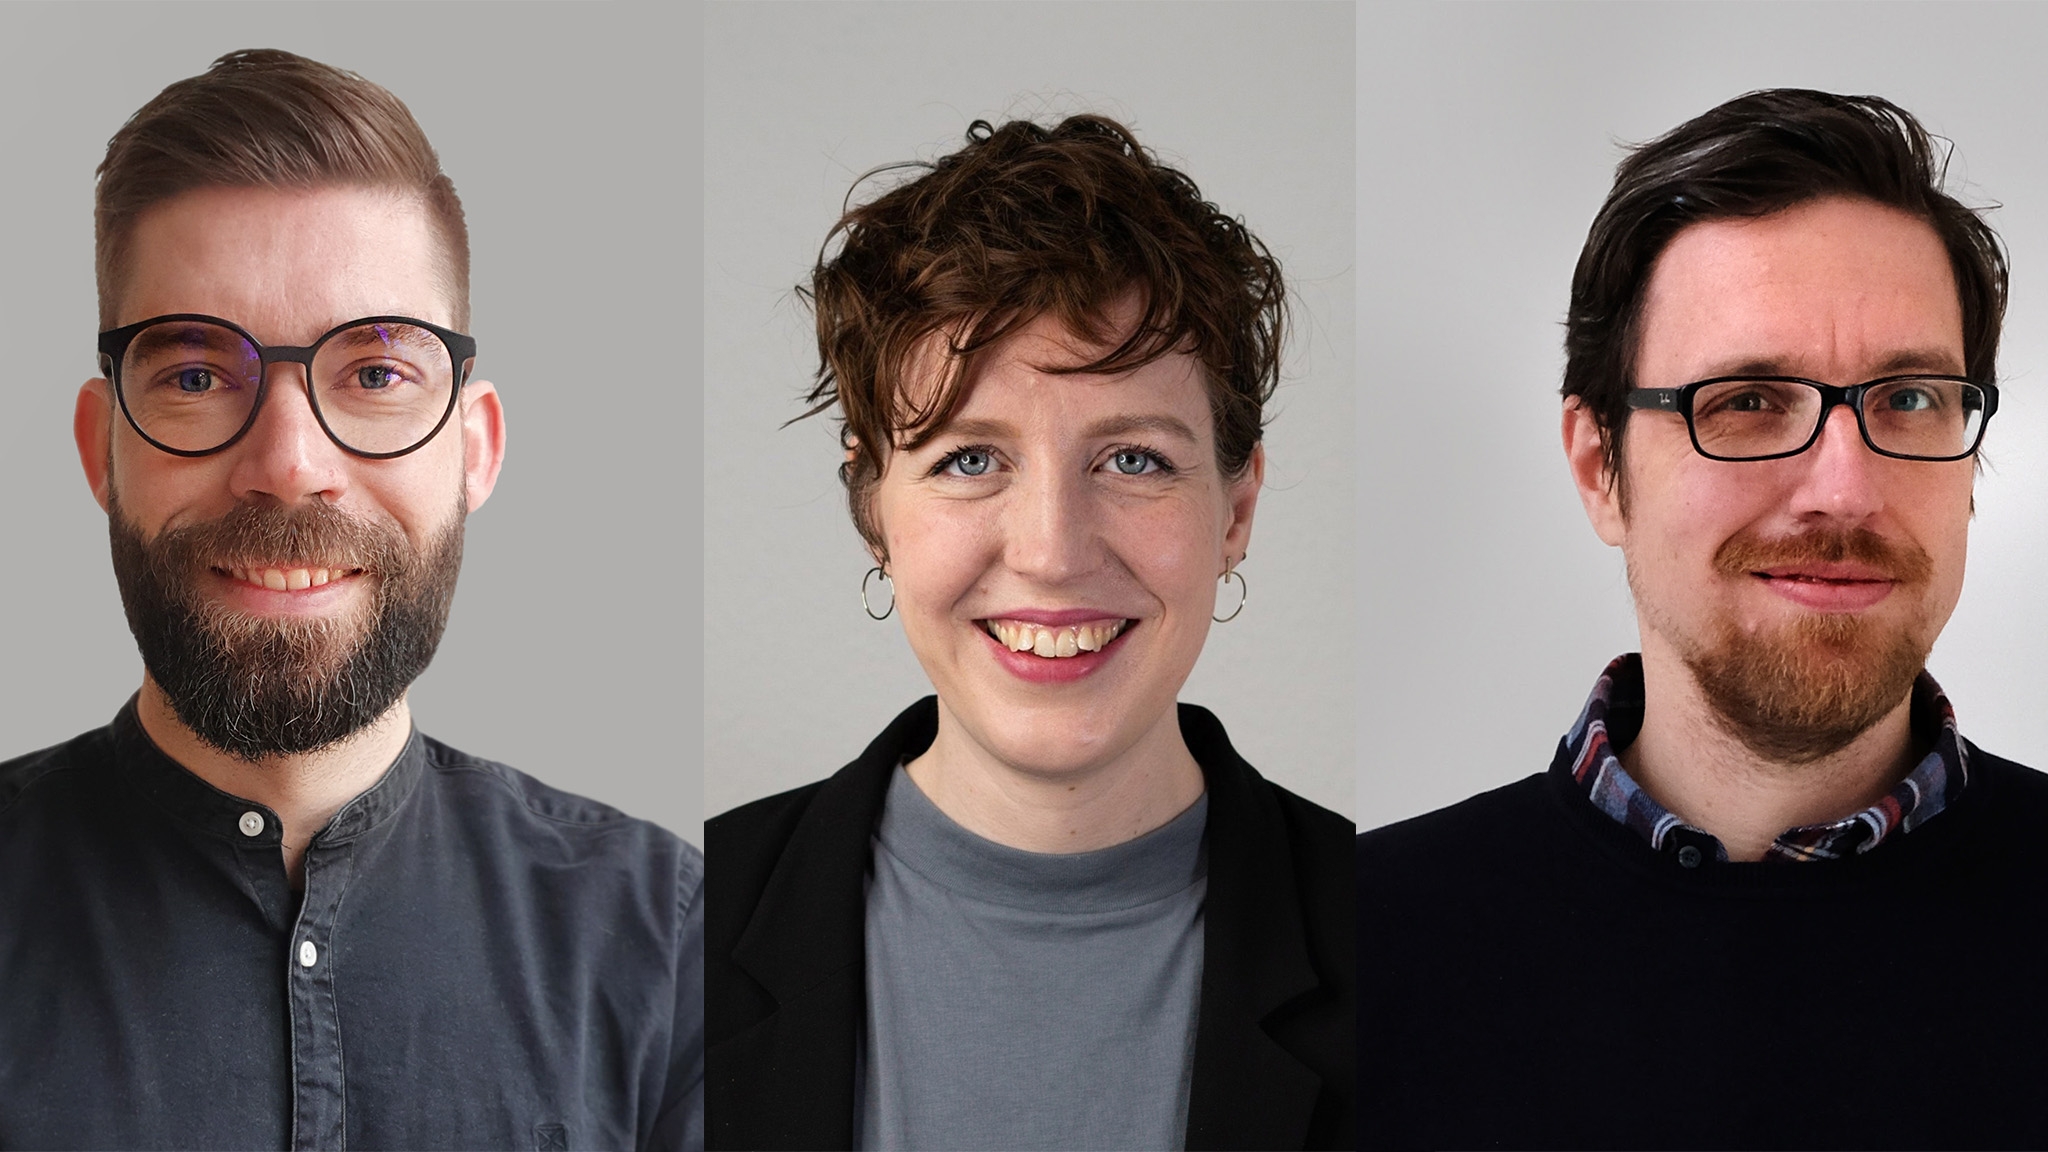 Tobias Knaack, Hannah Monderkamp und Martin Fischer (v.l.nr.) sind Teil der neue Führungsriege bei "Heise Online"